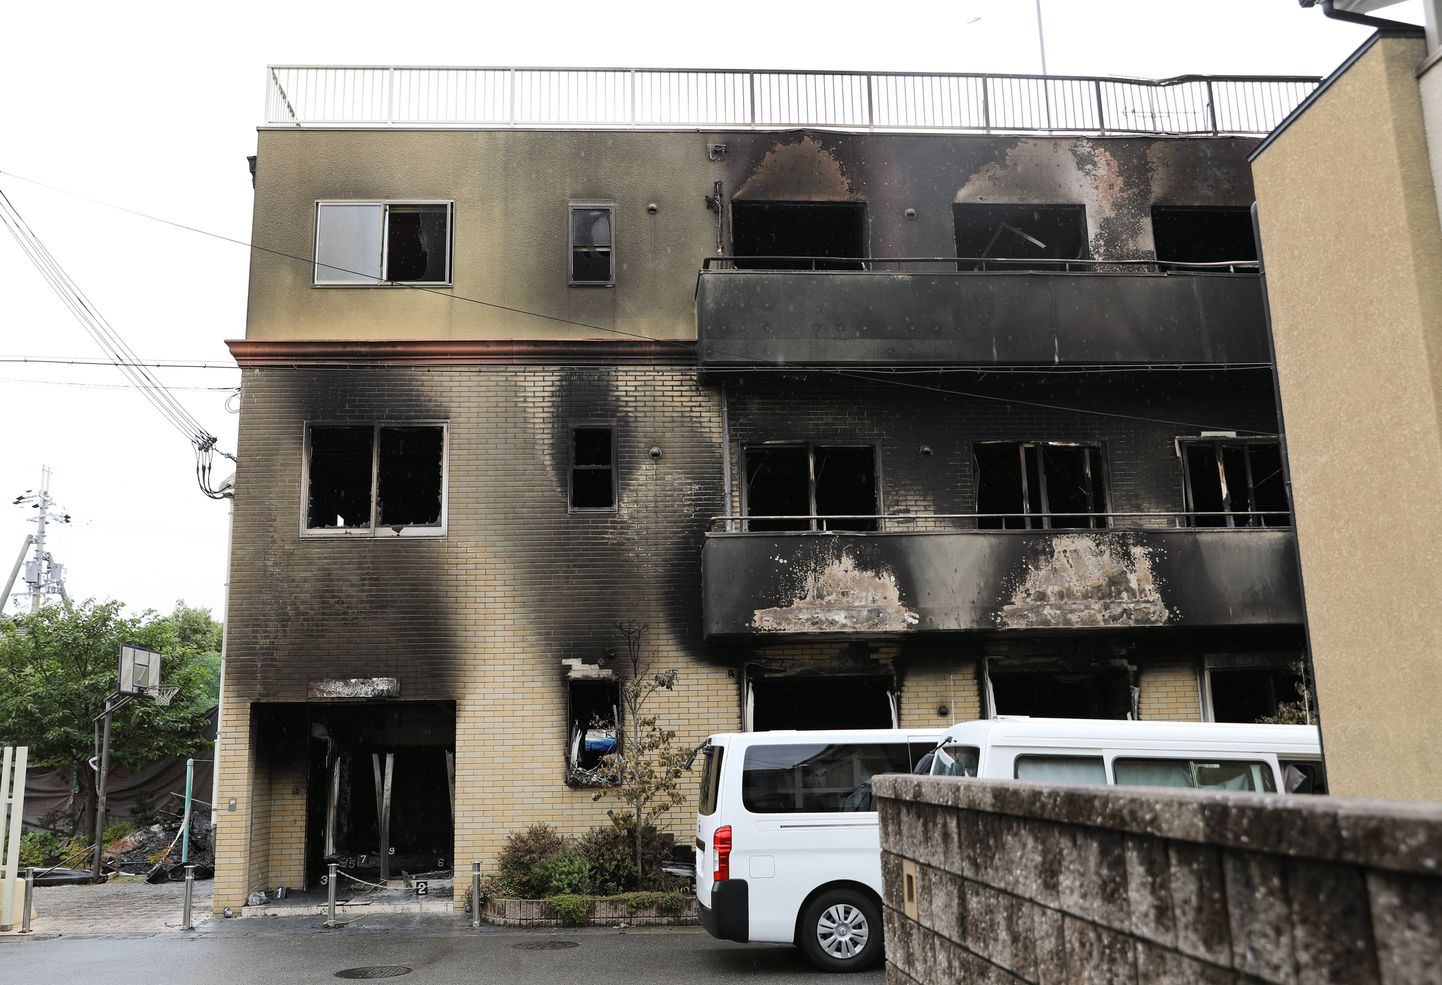 Kyoto animestuudio hoone, mille tulekahjus sai surma 34 inimest.